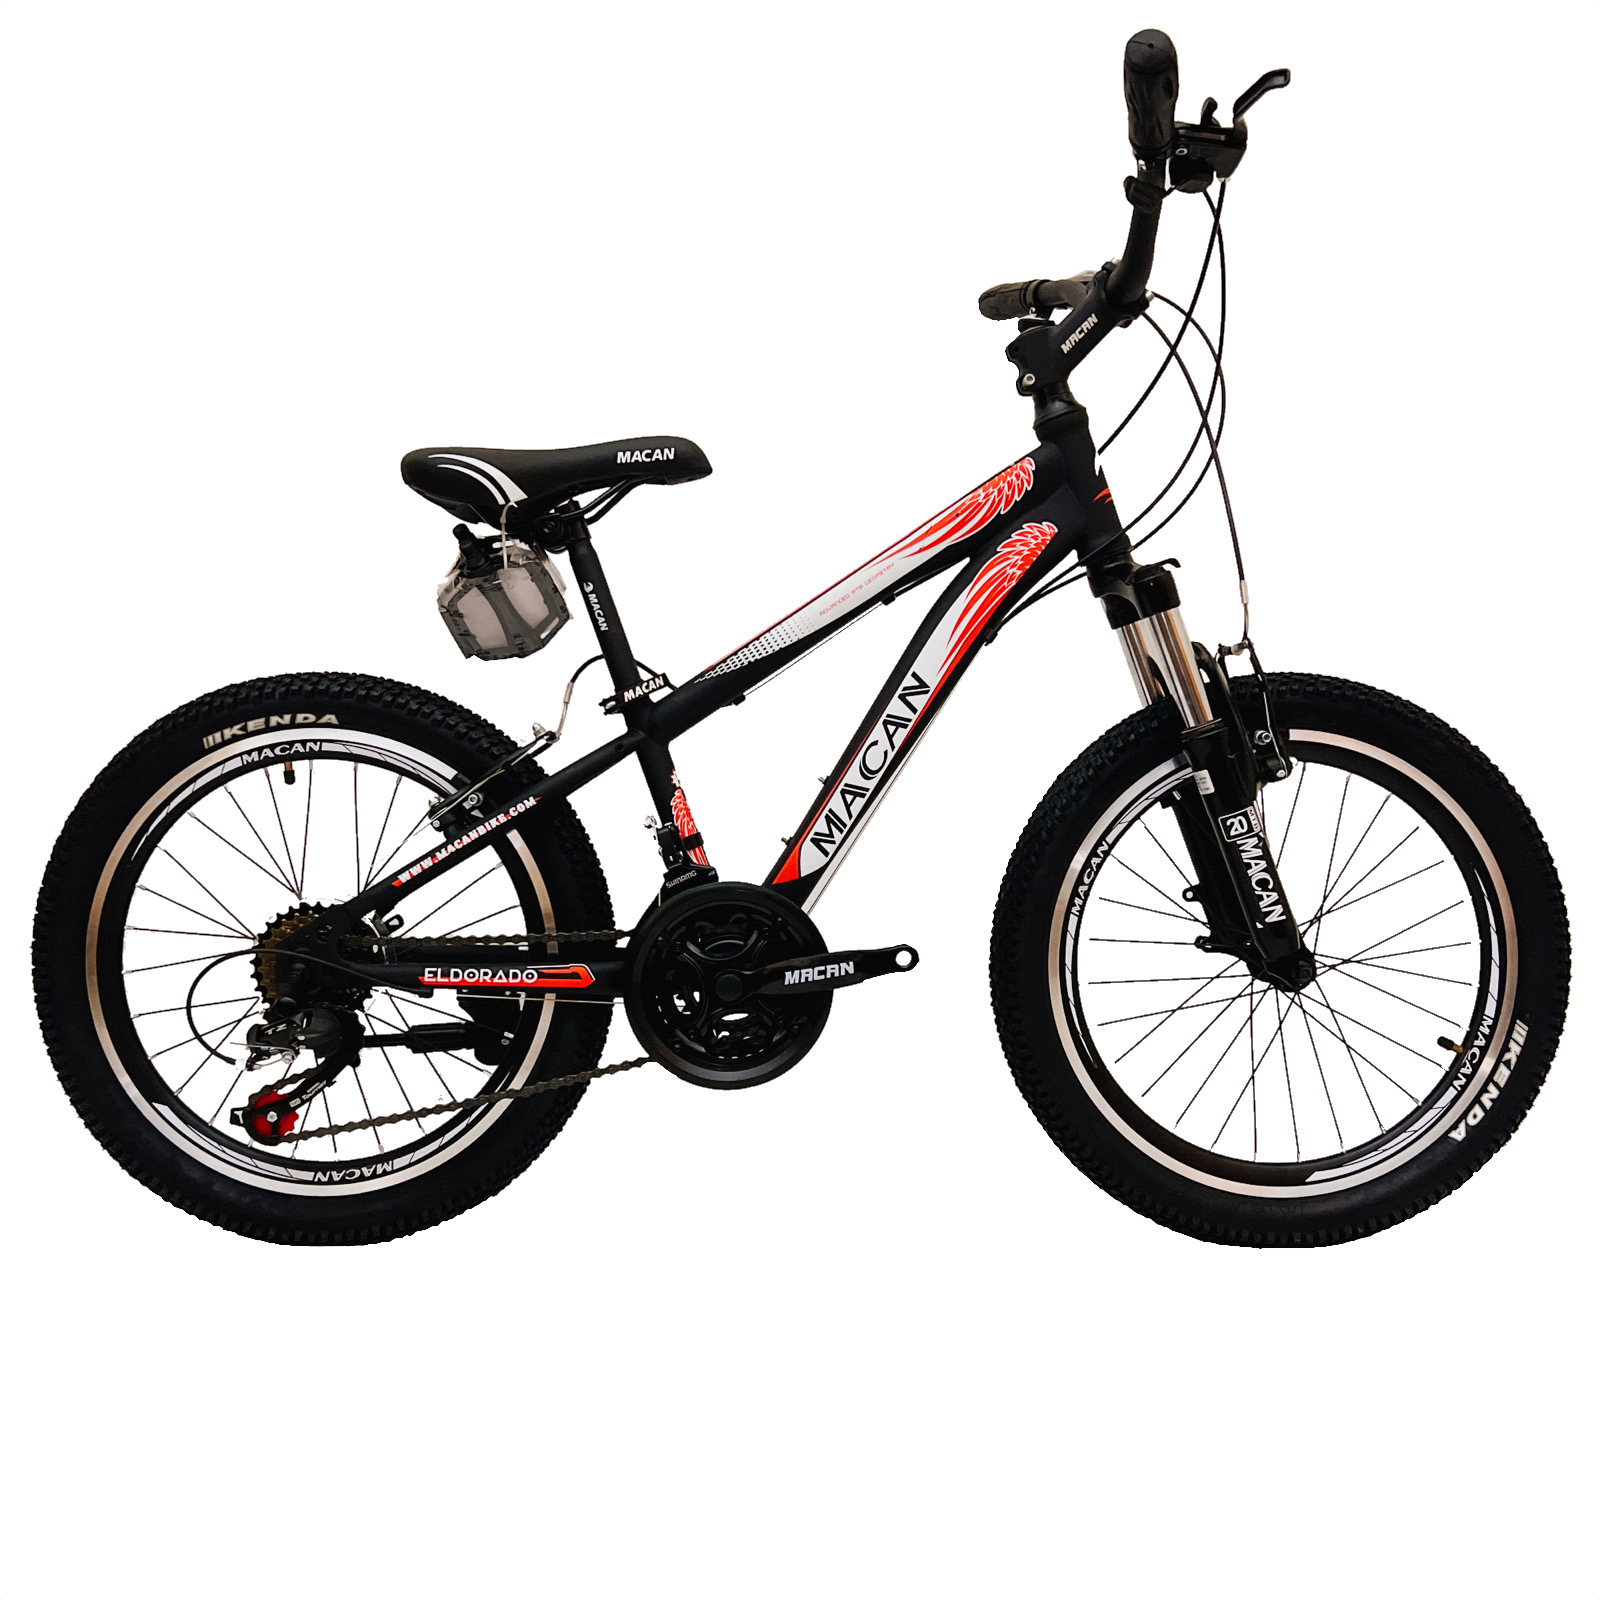 نکته خرید - قیمت روز دوچرخه کوهستان ماکان مدل ELDORADO سایز 20 خرید